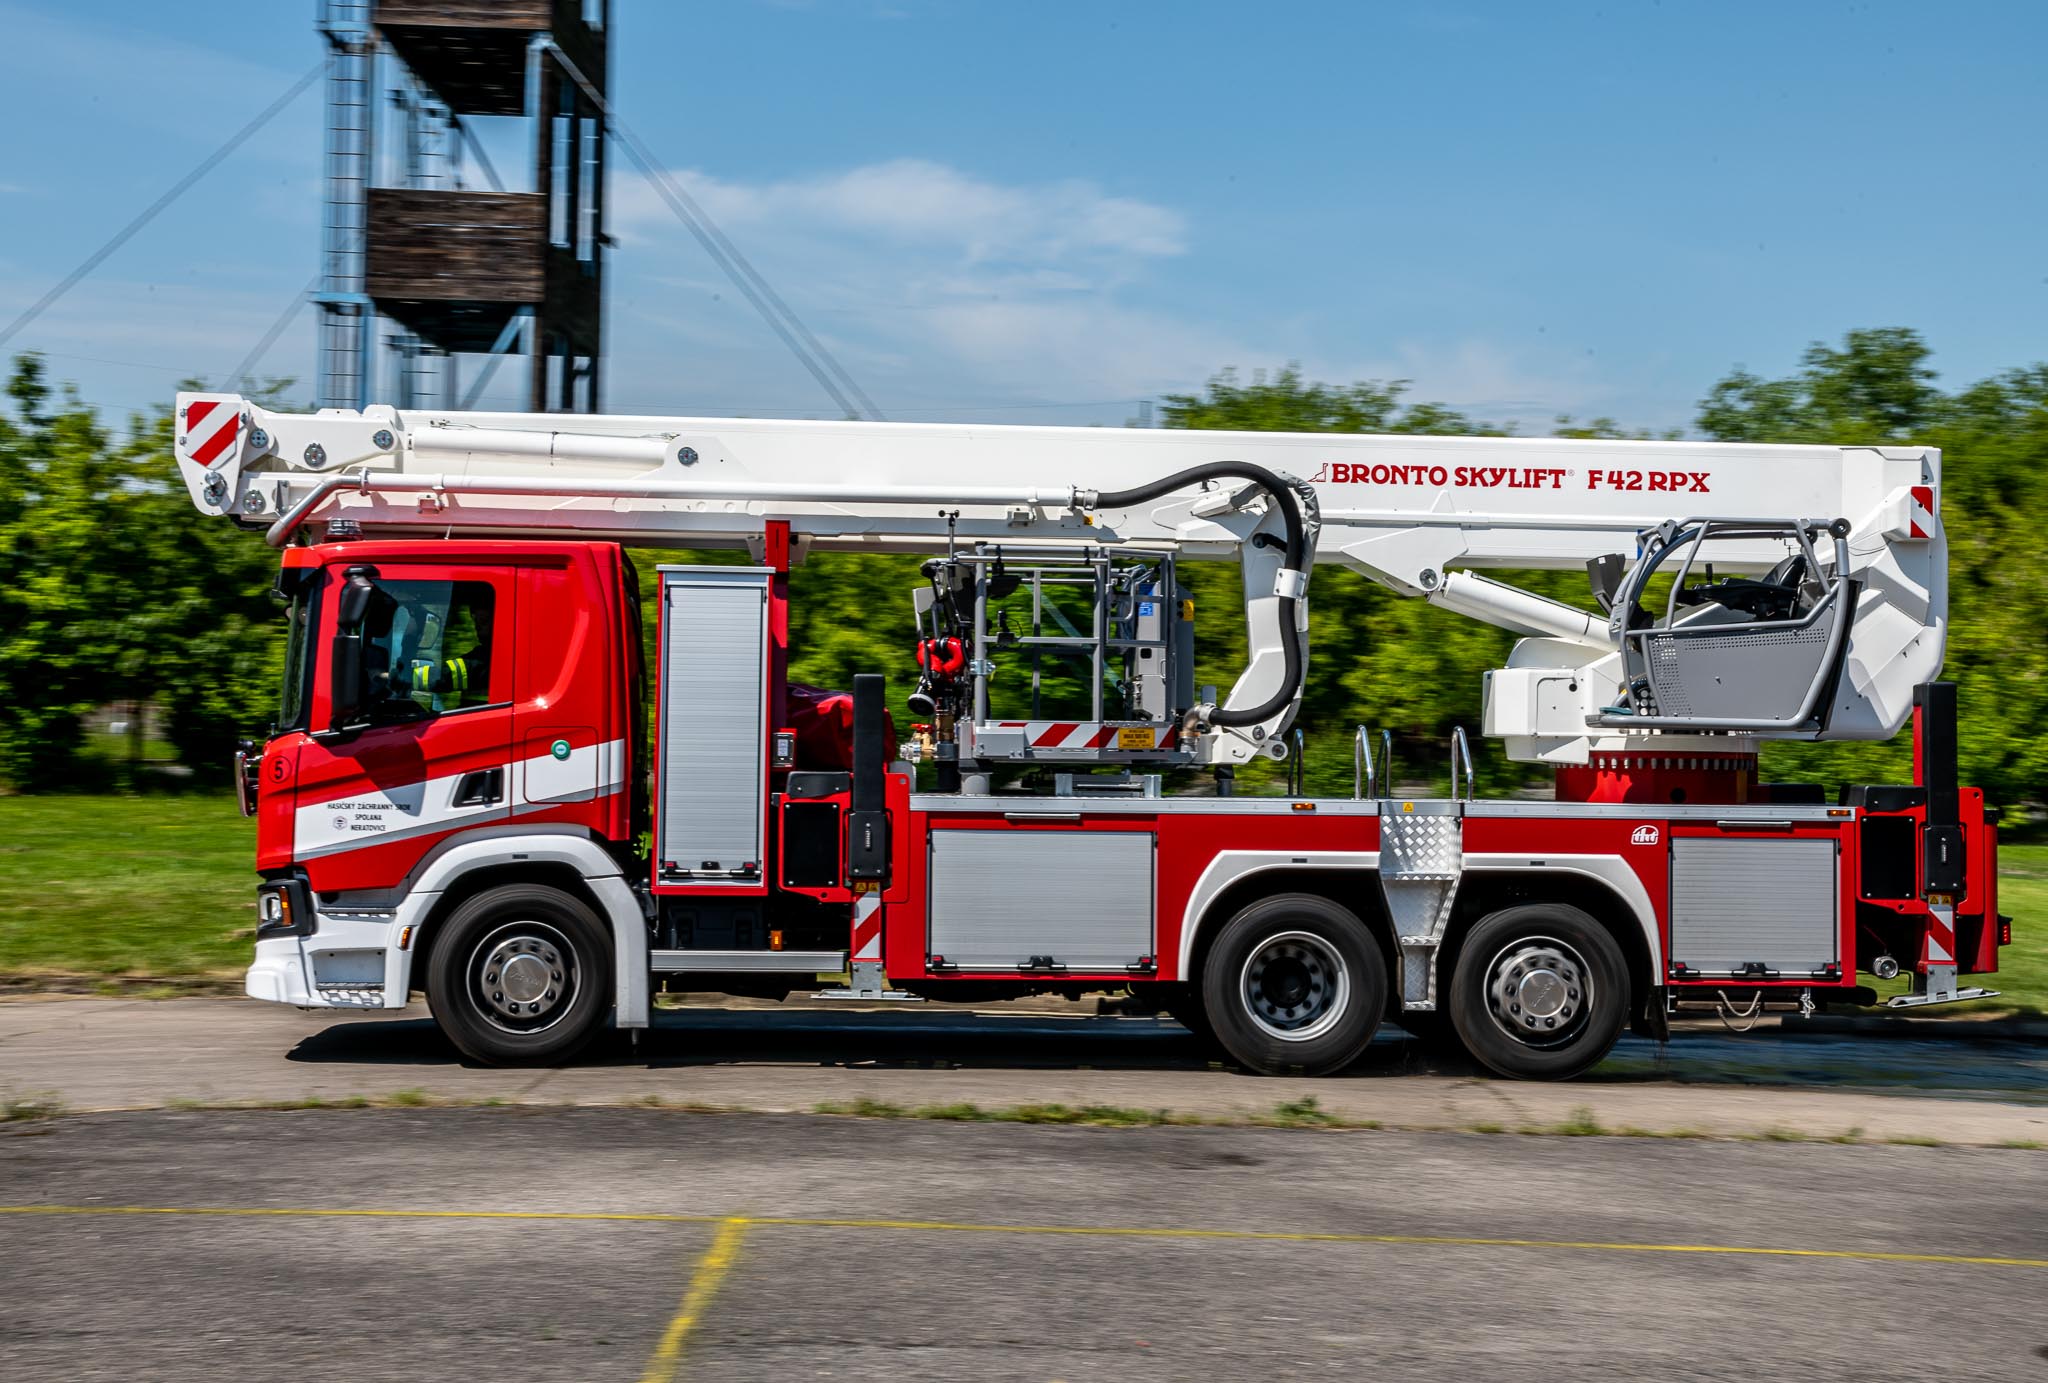 01 Novou zásahovou plošinu za 17 milionů korun budou hasiči ze Spolany využívat i při zásazích mimo areál.jpg